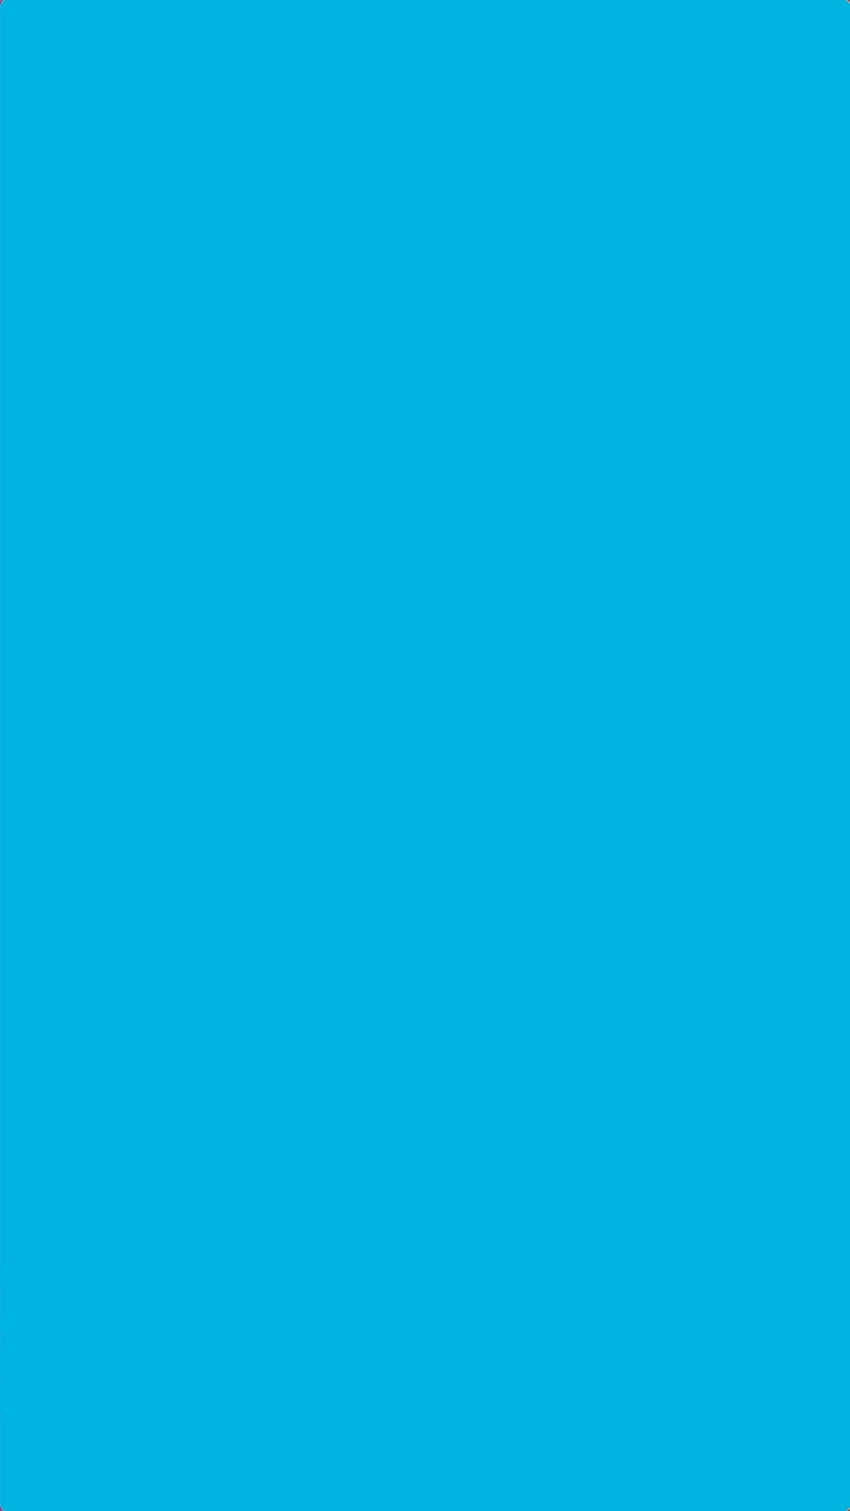 Sólidode Color Azul Pastel Brillante. Fondo de pantalla